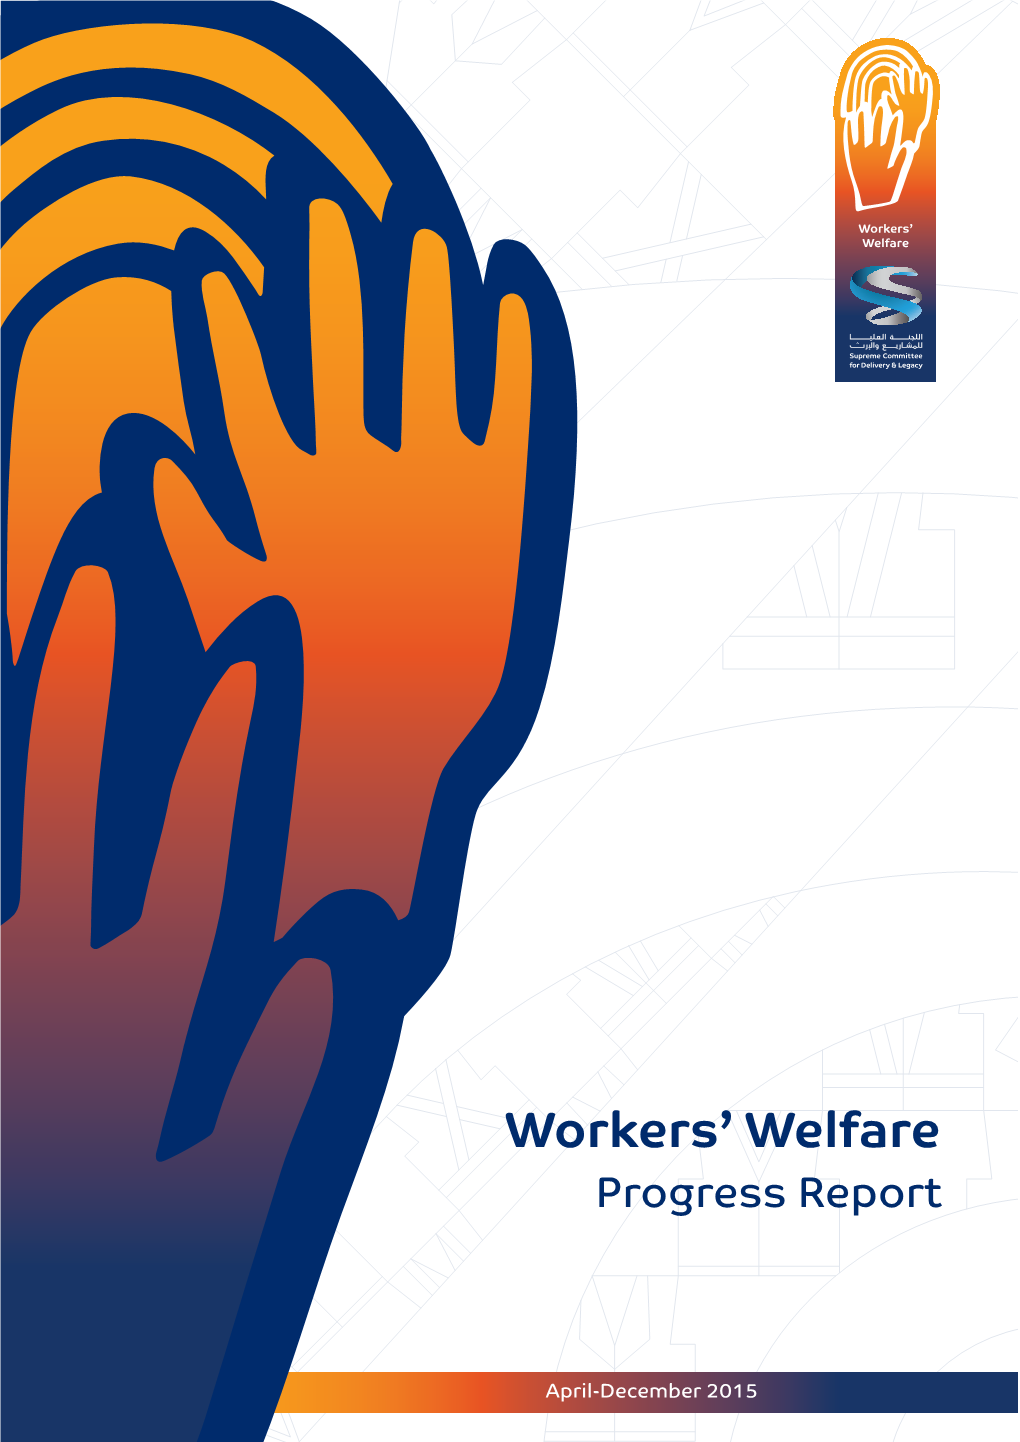 Workers' Welfare